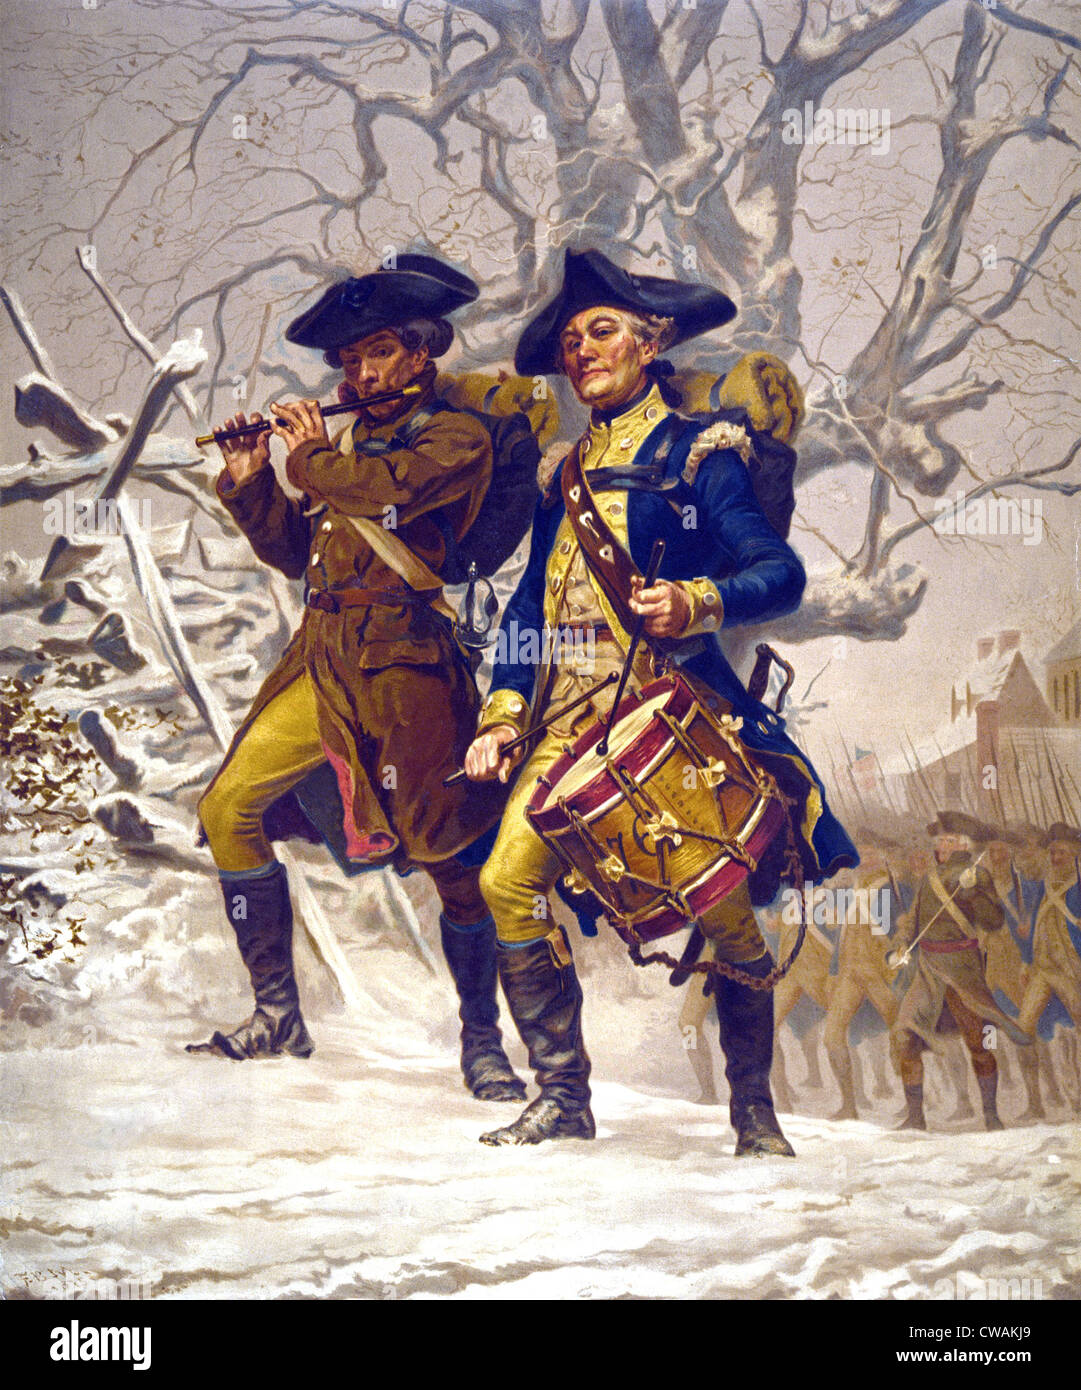 La garde de l'armée continentale, jouant fife and drum, marchant en hiver pendant la Révolution américaine, 1776-1783. Banque D'Images